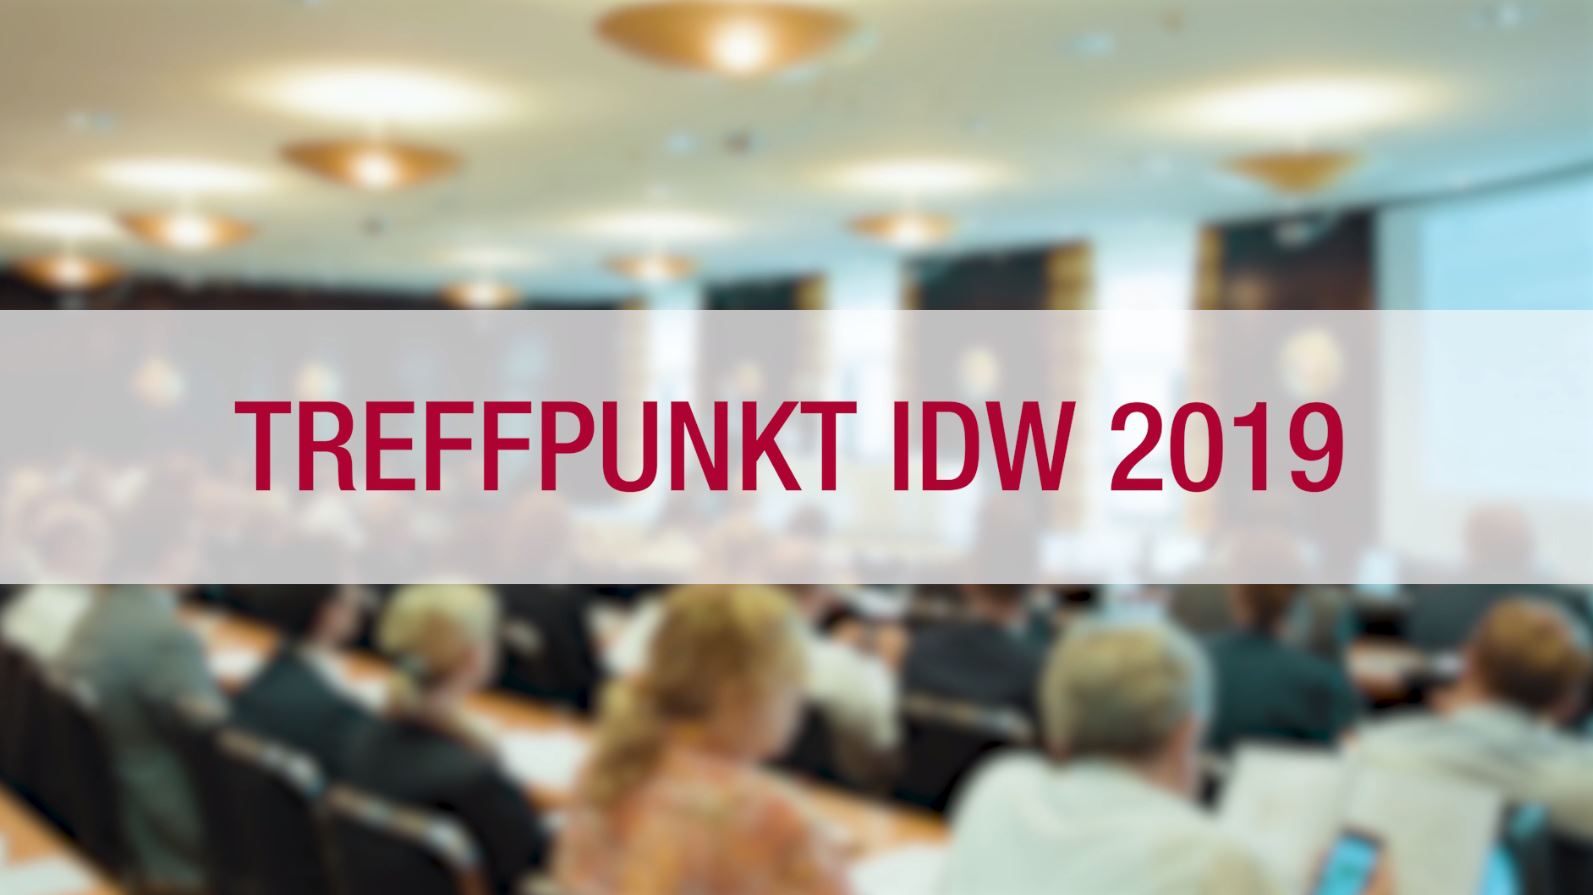 Schriftzug Treffpunkt IDW 2019 mit Veranstaltungsimpressionen im Hintergrund